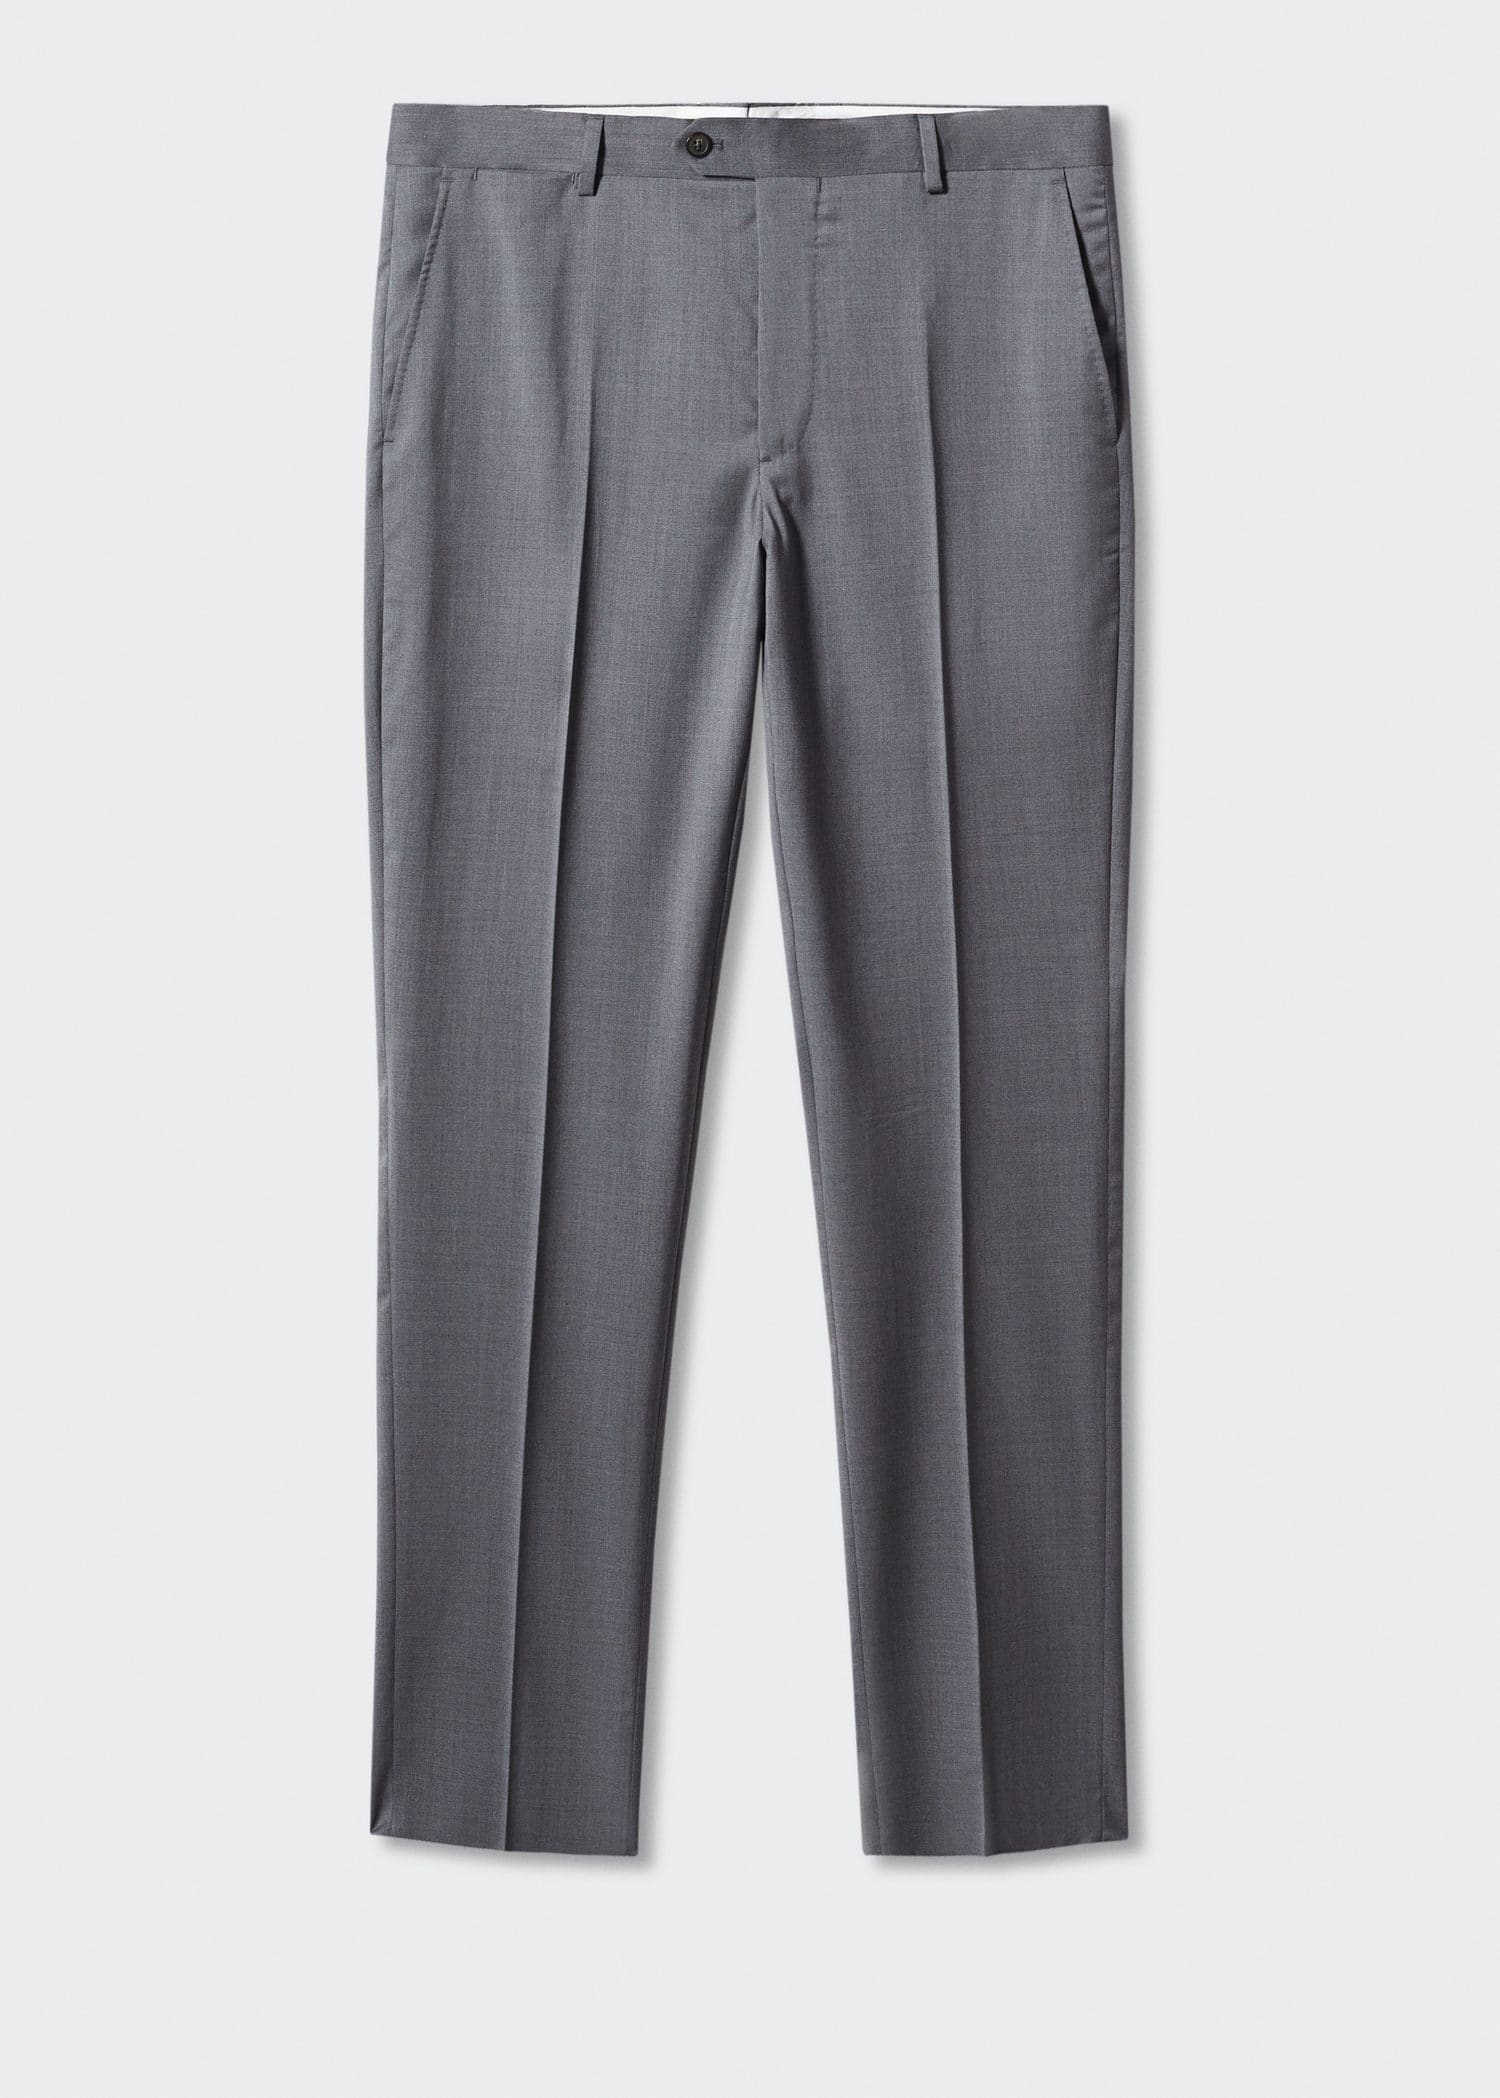 Pantalón traje slim fit lana virgen - Artículo sin modelo